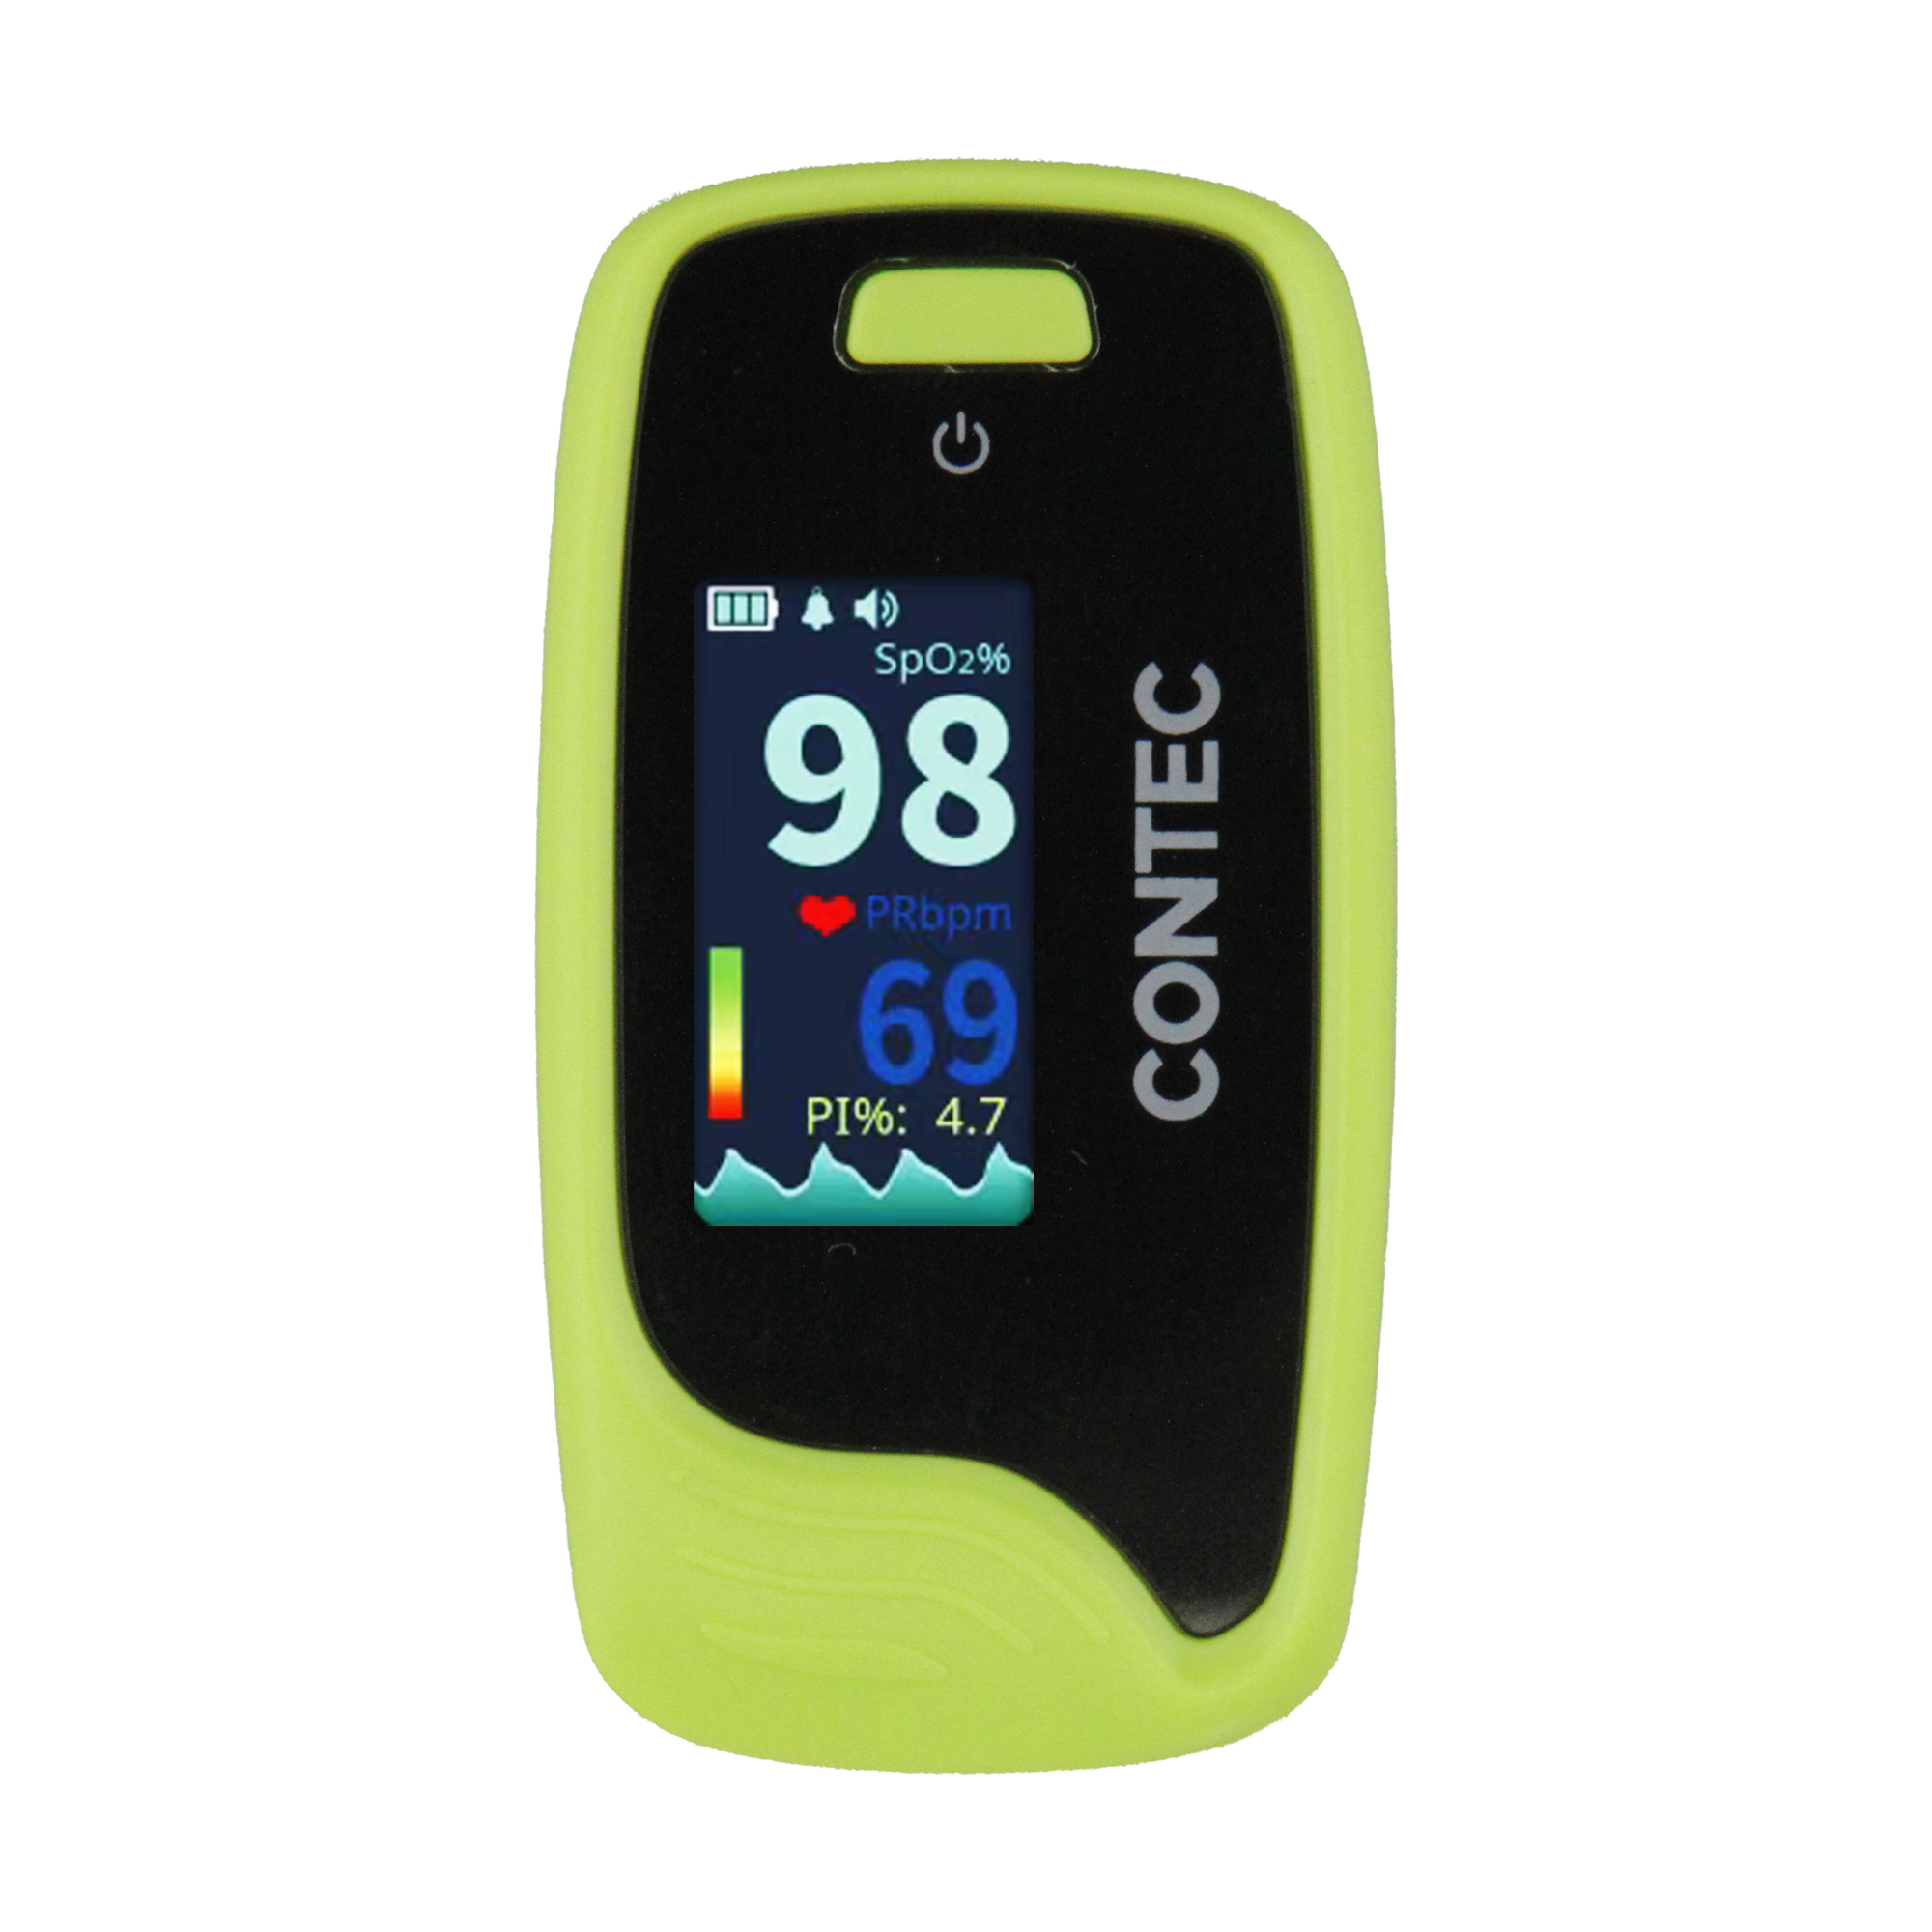 CMS 50-Pro Fingerpulsoximeter - optional mit Sound-Funktion. Kompaktes Gerät zur schnellen, mobile Messung des Sauerstoffgehaltes im Blut und Pulsmessung.